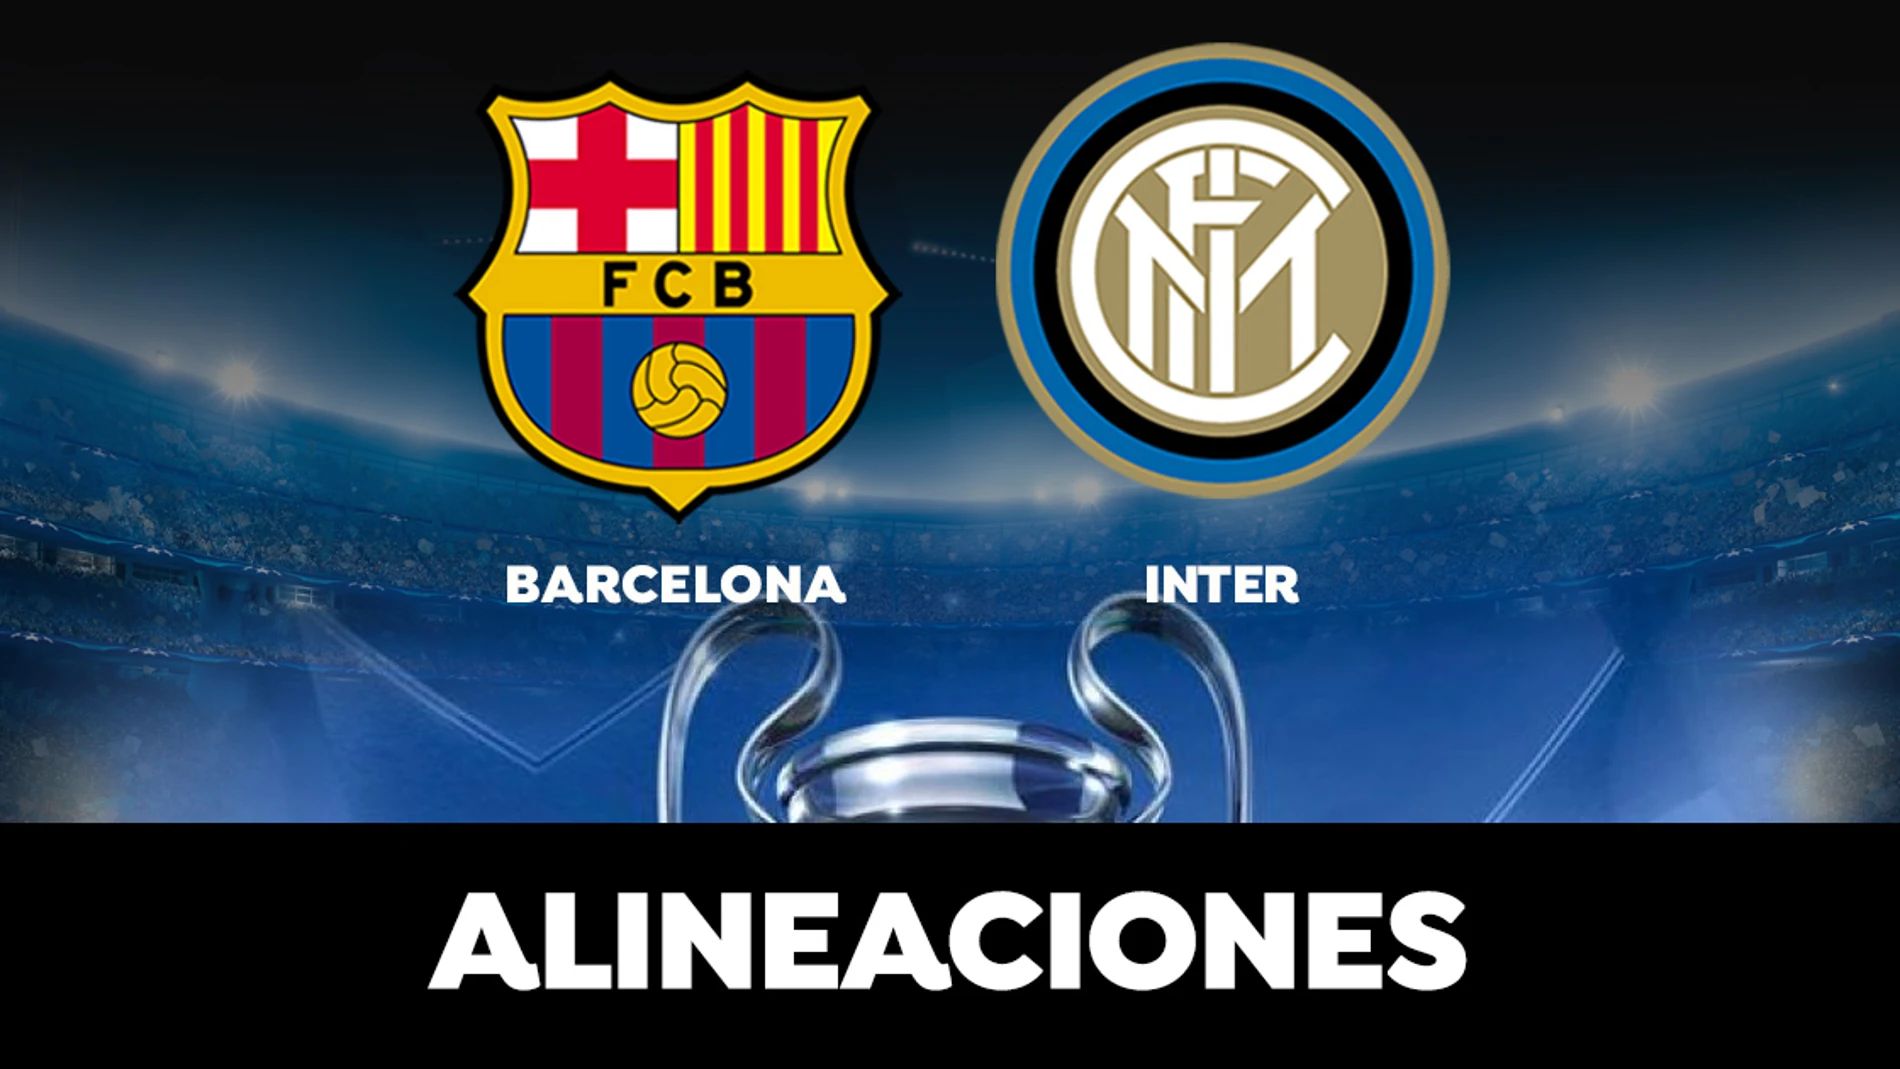 Alineación del Barcelona ante el Inter de Milán en la Champions League